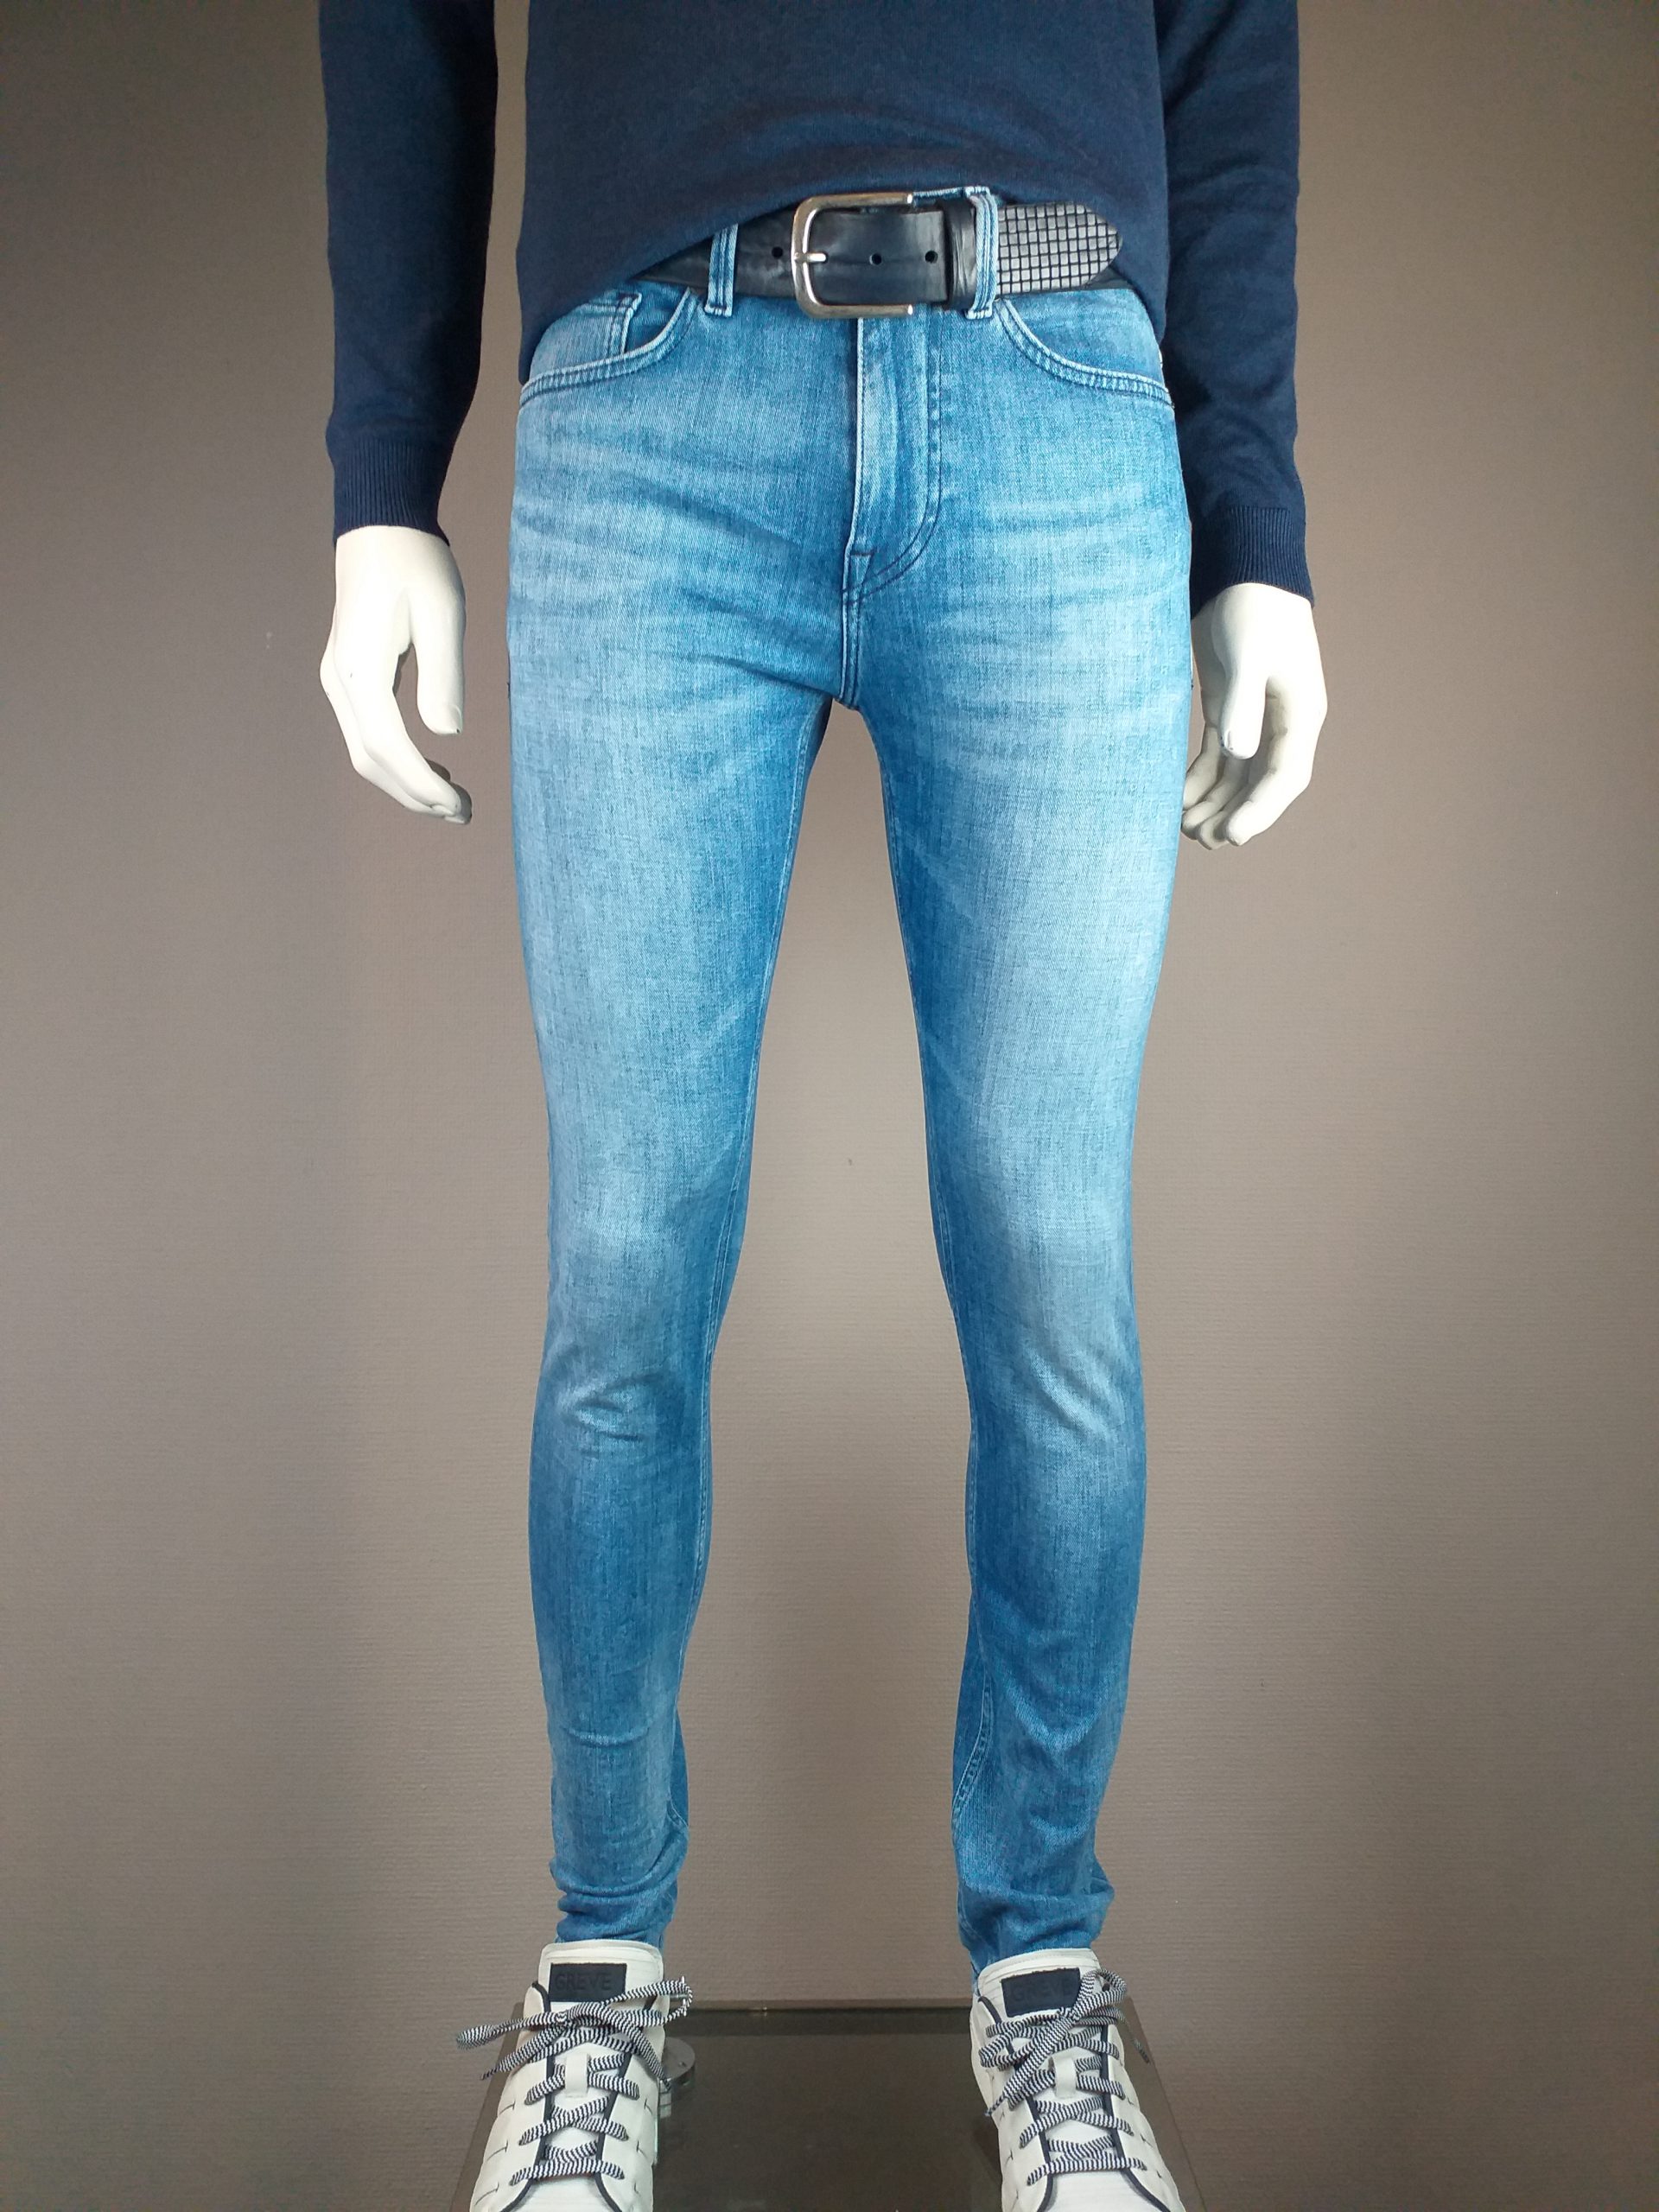 Beweegt niet Jaar gek Boss jeans delaware - Houtman Mode Meppel WebShop